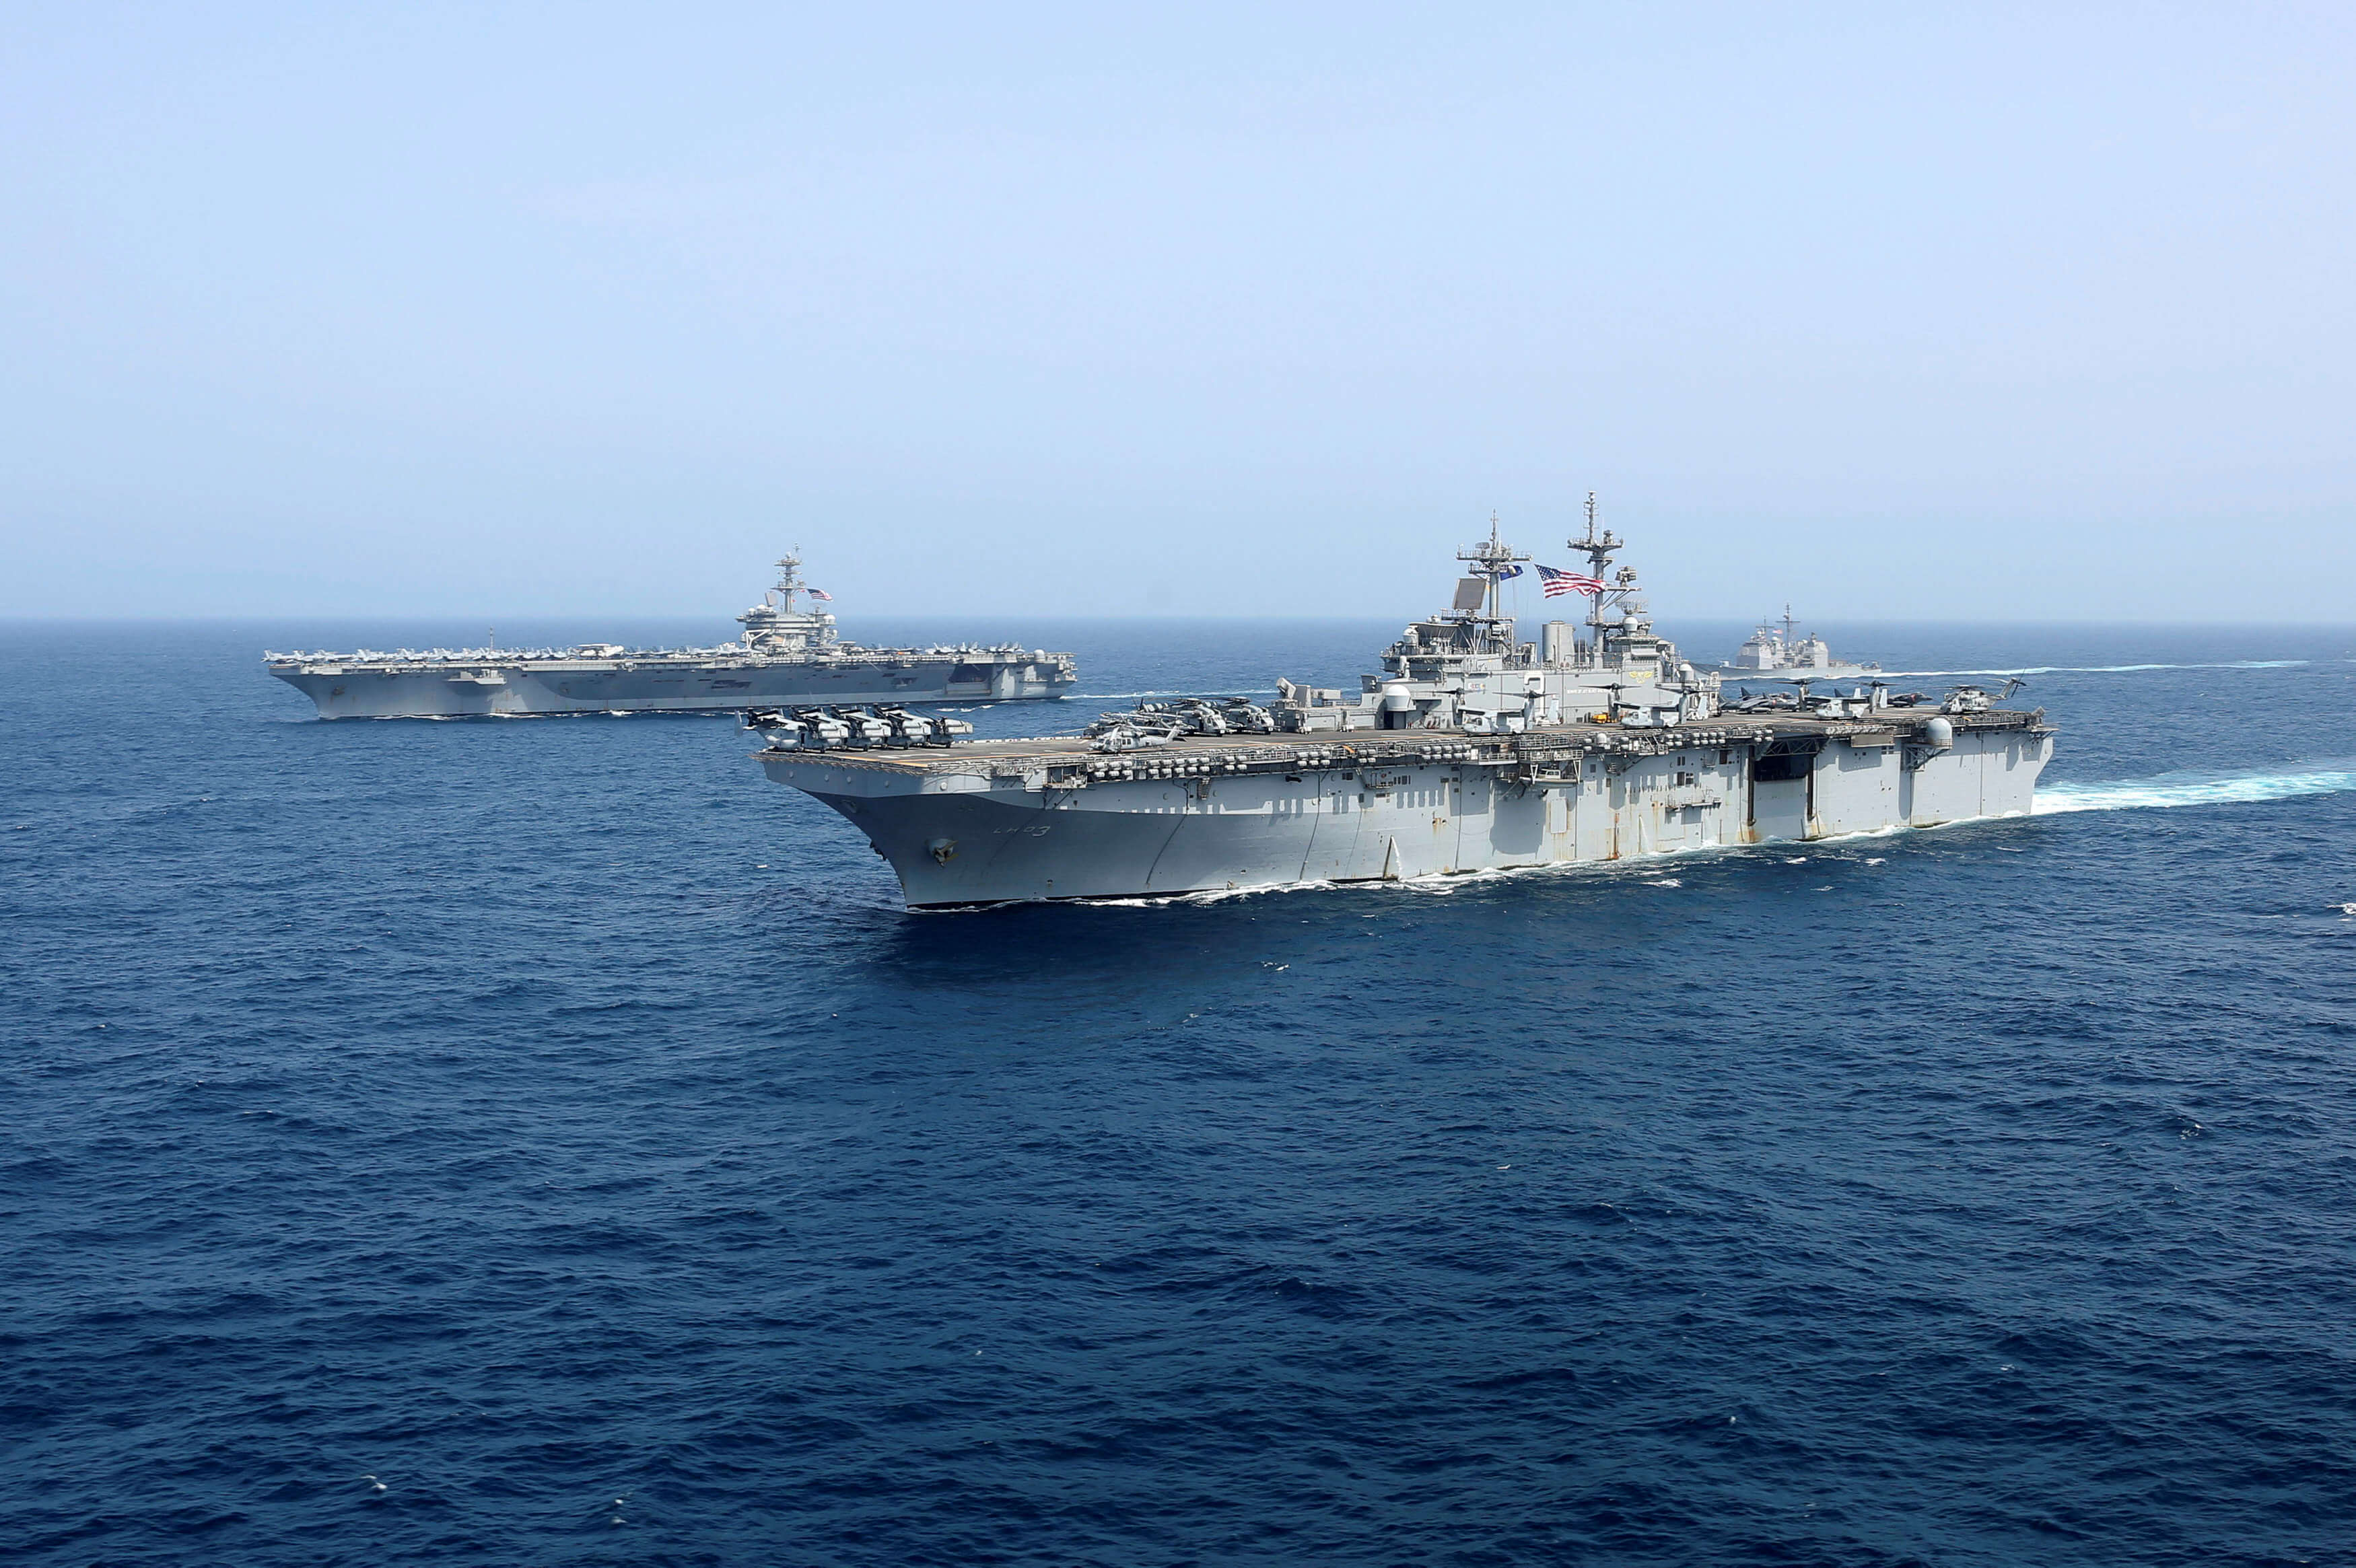 Το Ιράν απειλεί ευθέως τις ΗΠΑ – “Με την παραμικρή ανοησία θα τους βυθίσουμε τα πλοία”